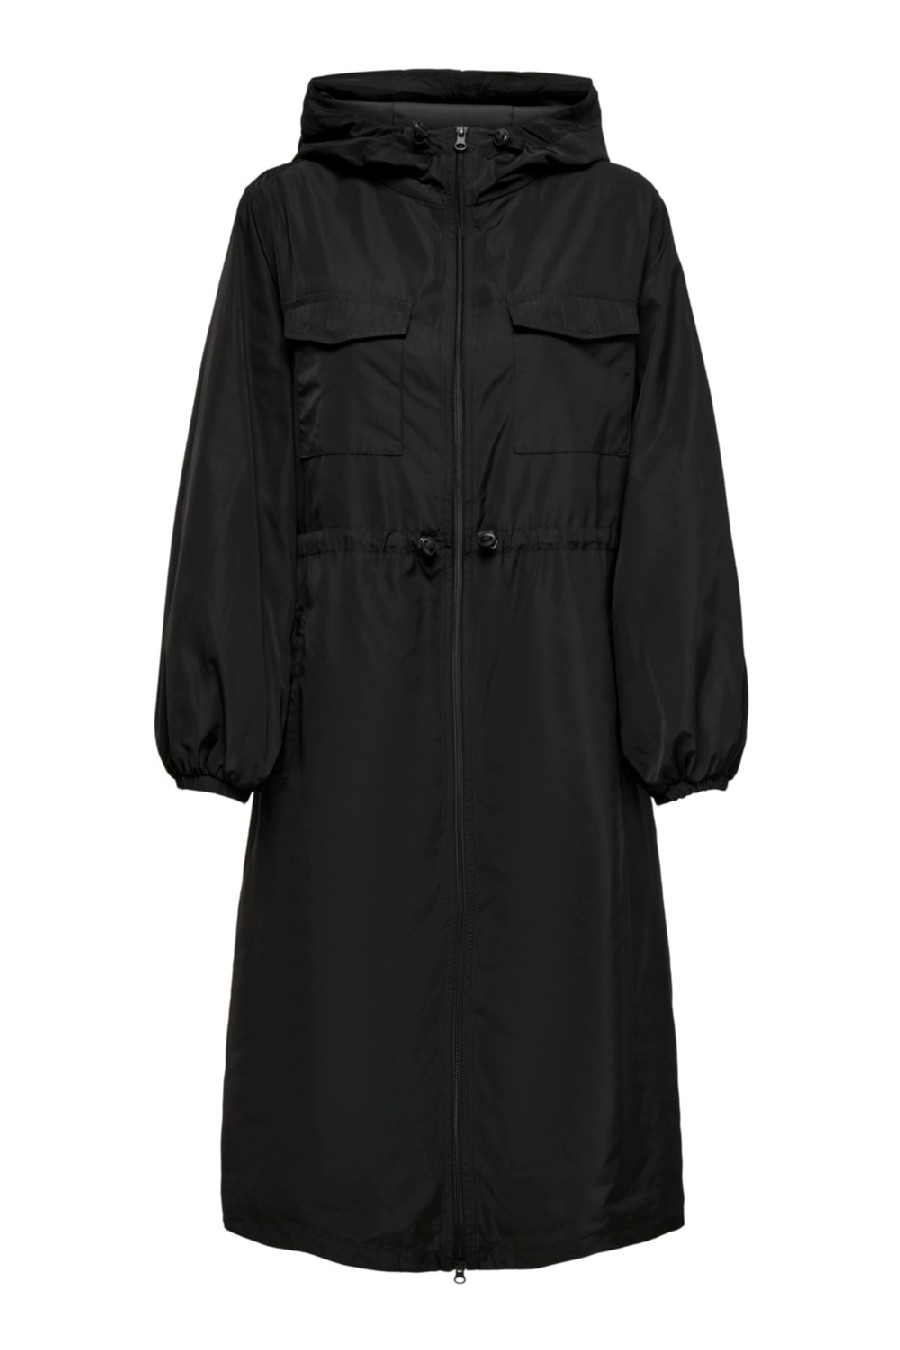 Jacket JACQUELINE DE YONG 15253253-Black